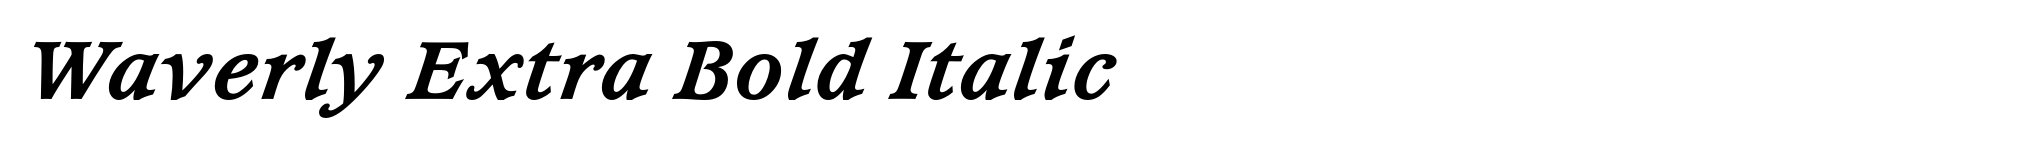 Waverly Extra Bold Italic image